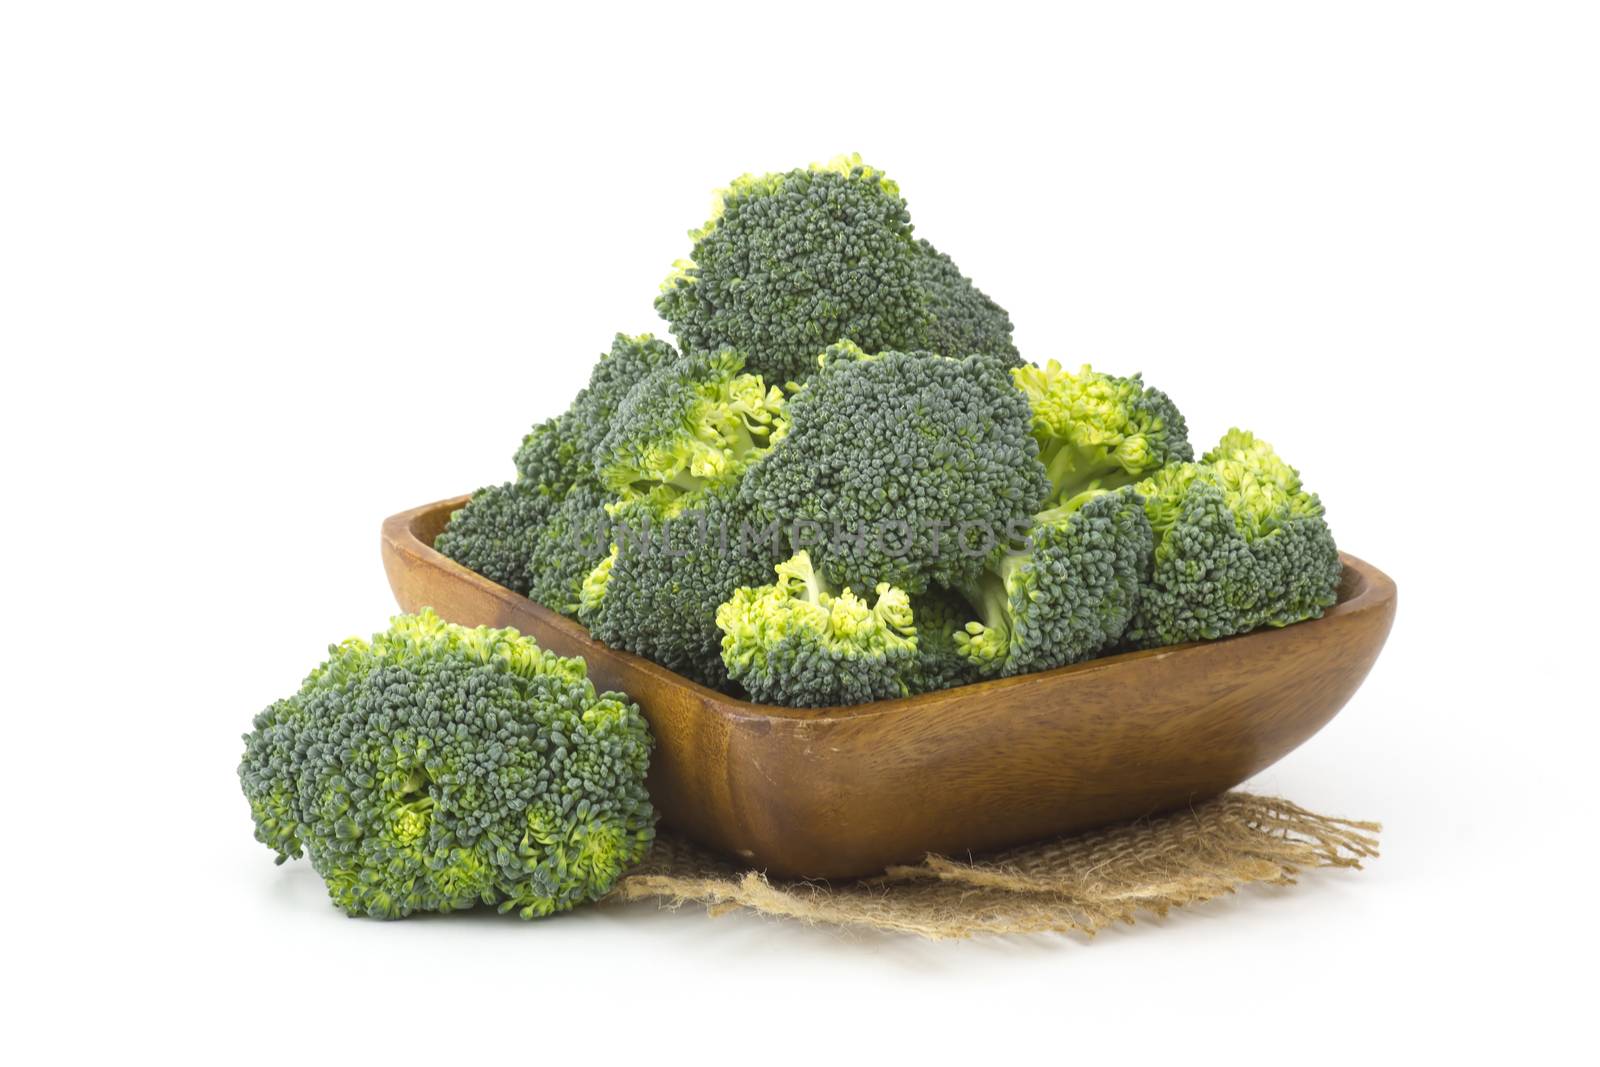 Raw broccoli  by miradrozdowski